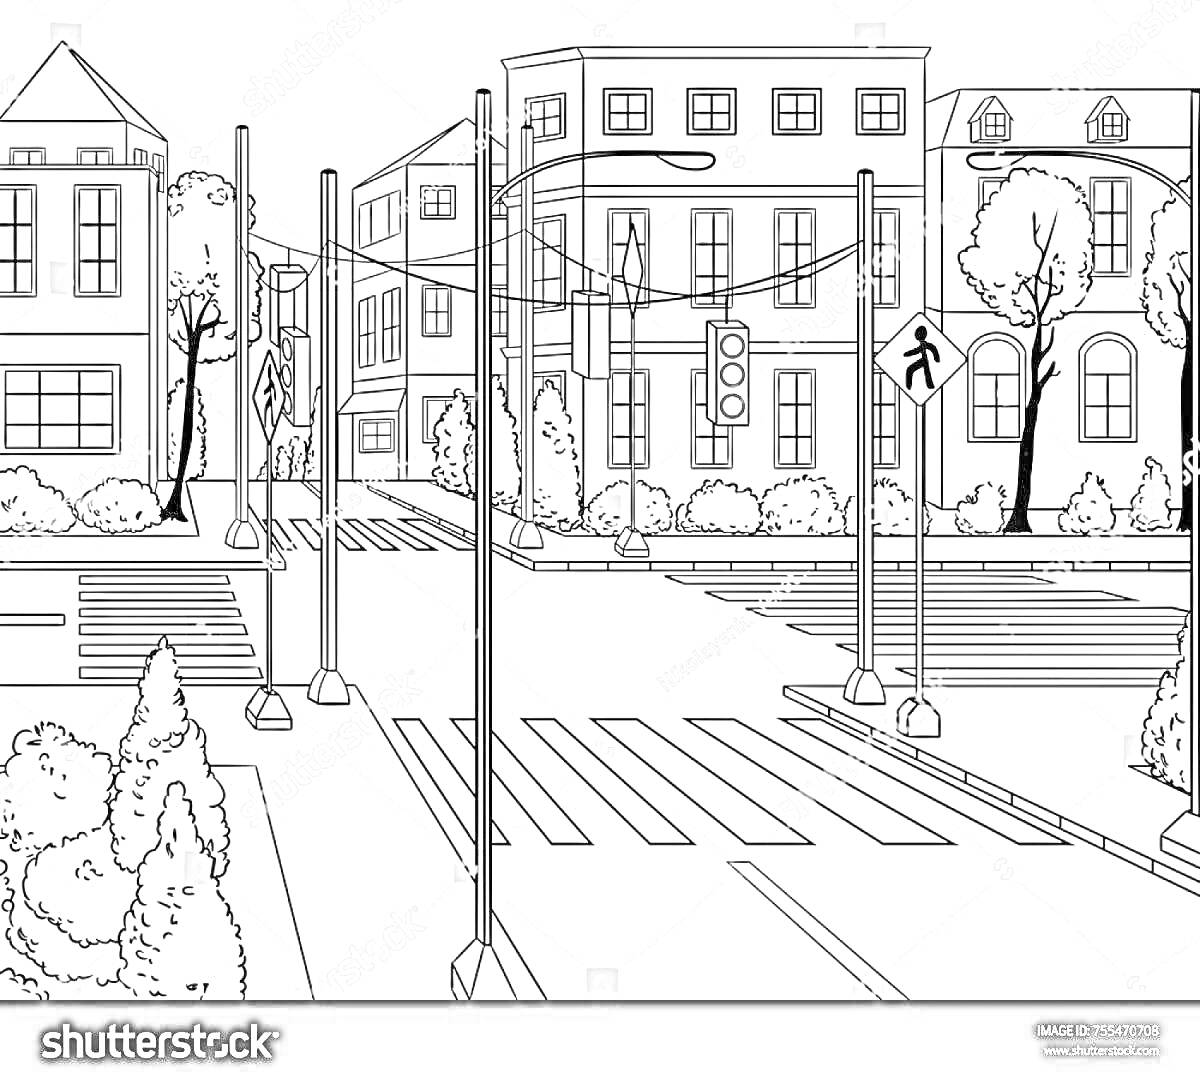 Раскраска Перекресток с пешеходным переходом, светофорами, дорожными знаками, деревьями и зданиями в городской среде